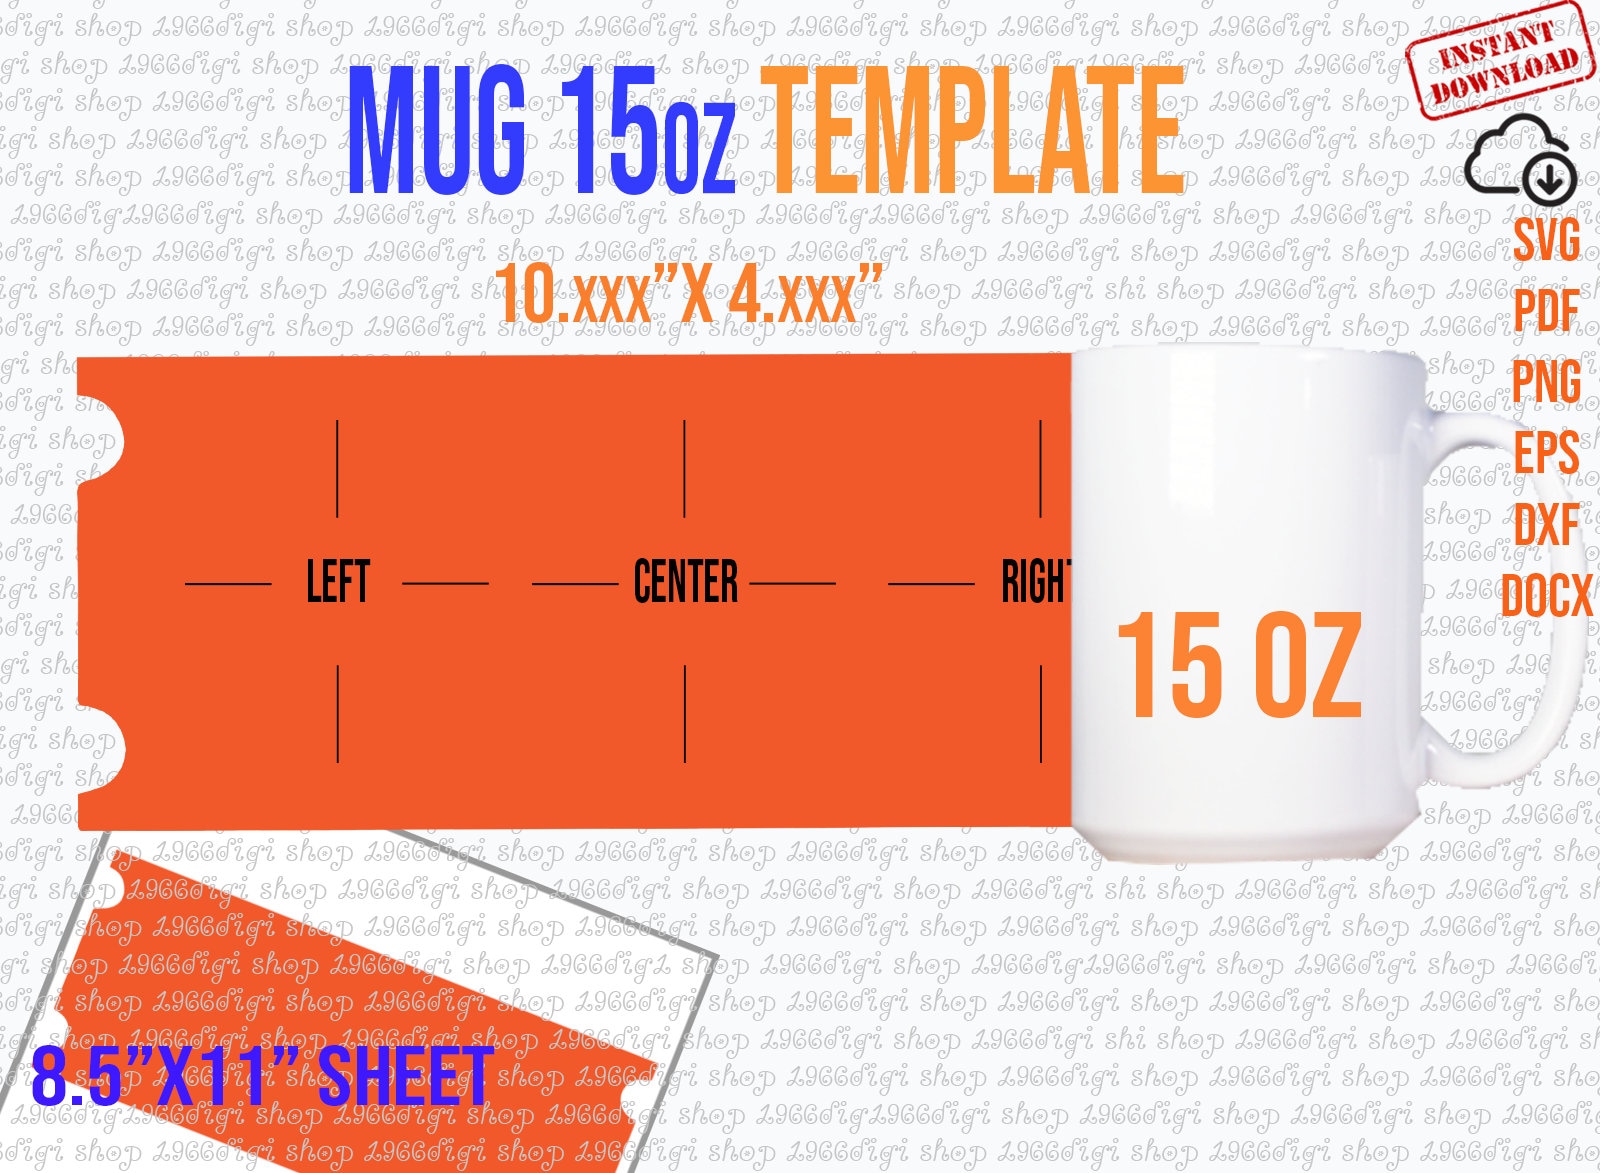 mug-15oz-template-15-oz-mug-template-for-instant-download-etsy